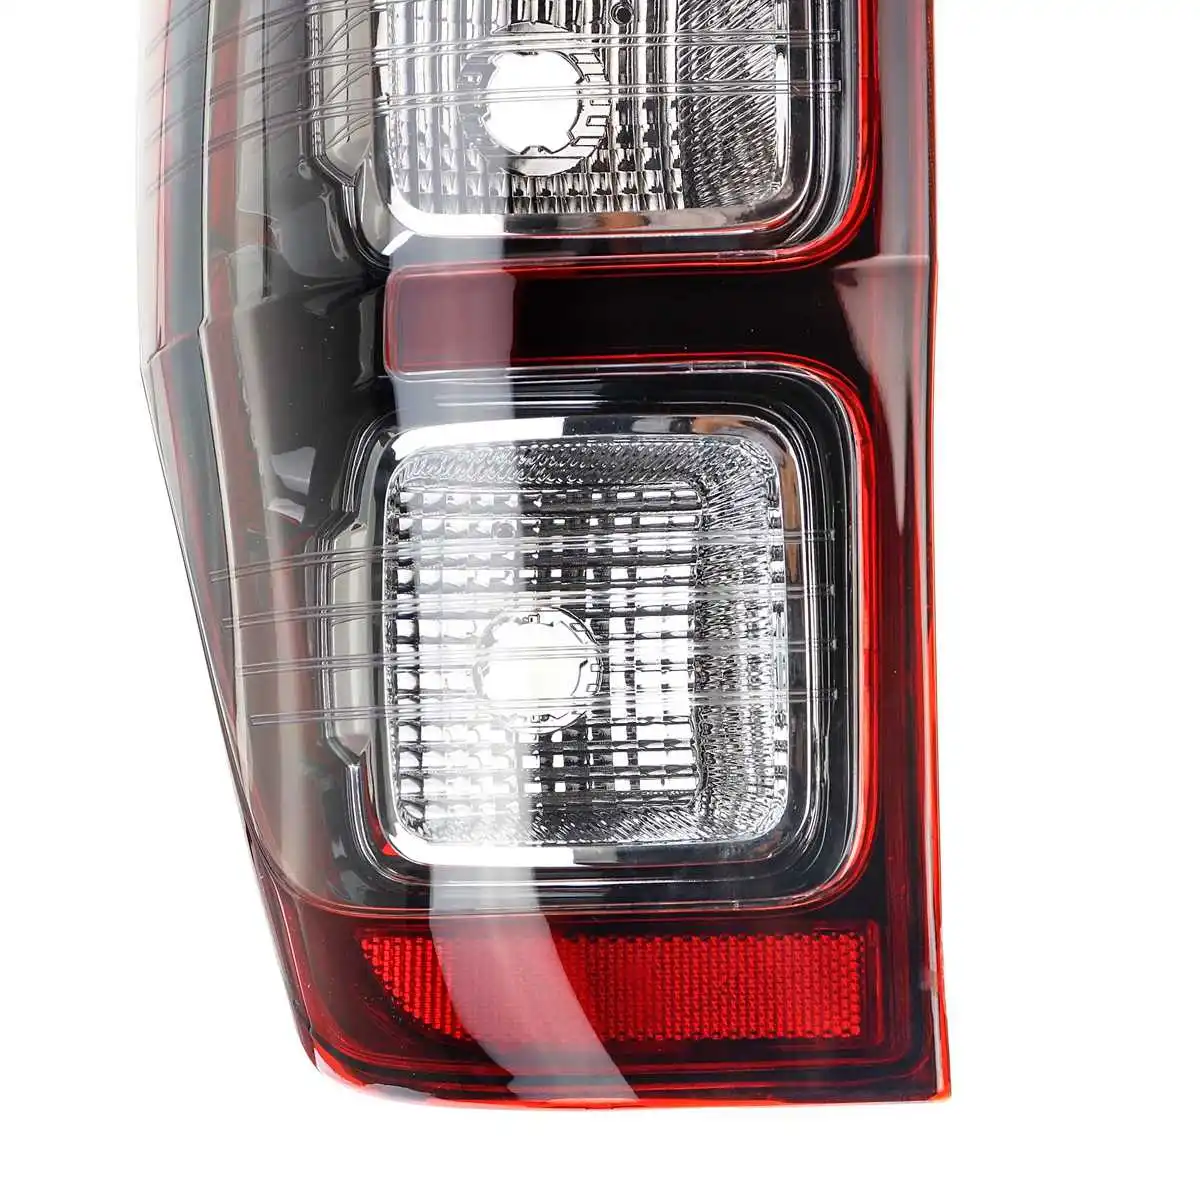 Ключей сайт ReCar хвост светильник для Ford Ranger лампы 2011 2012 2013 хвост светильник задний стоп-сигнал заднего хода Противотуманные фары Дневные ходовые огни